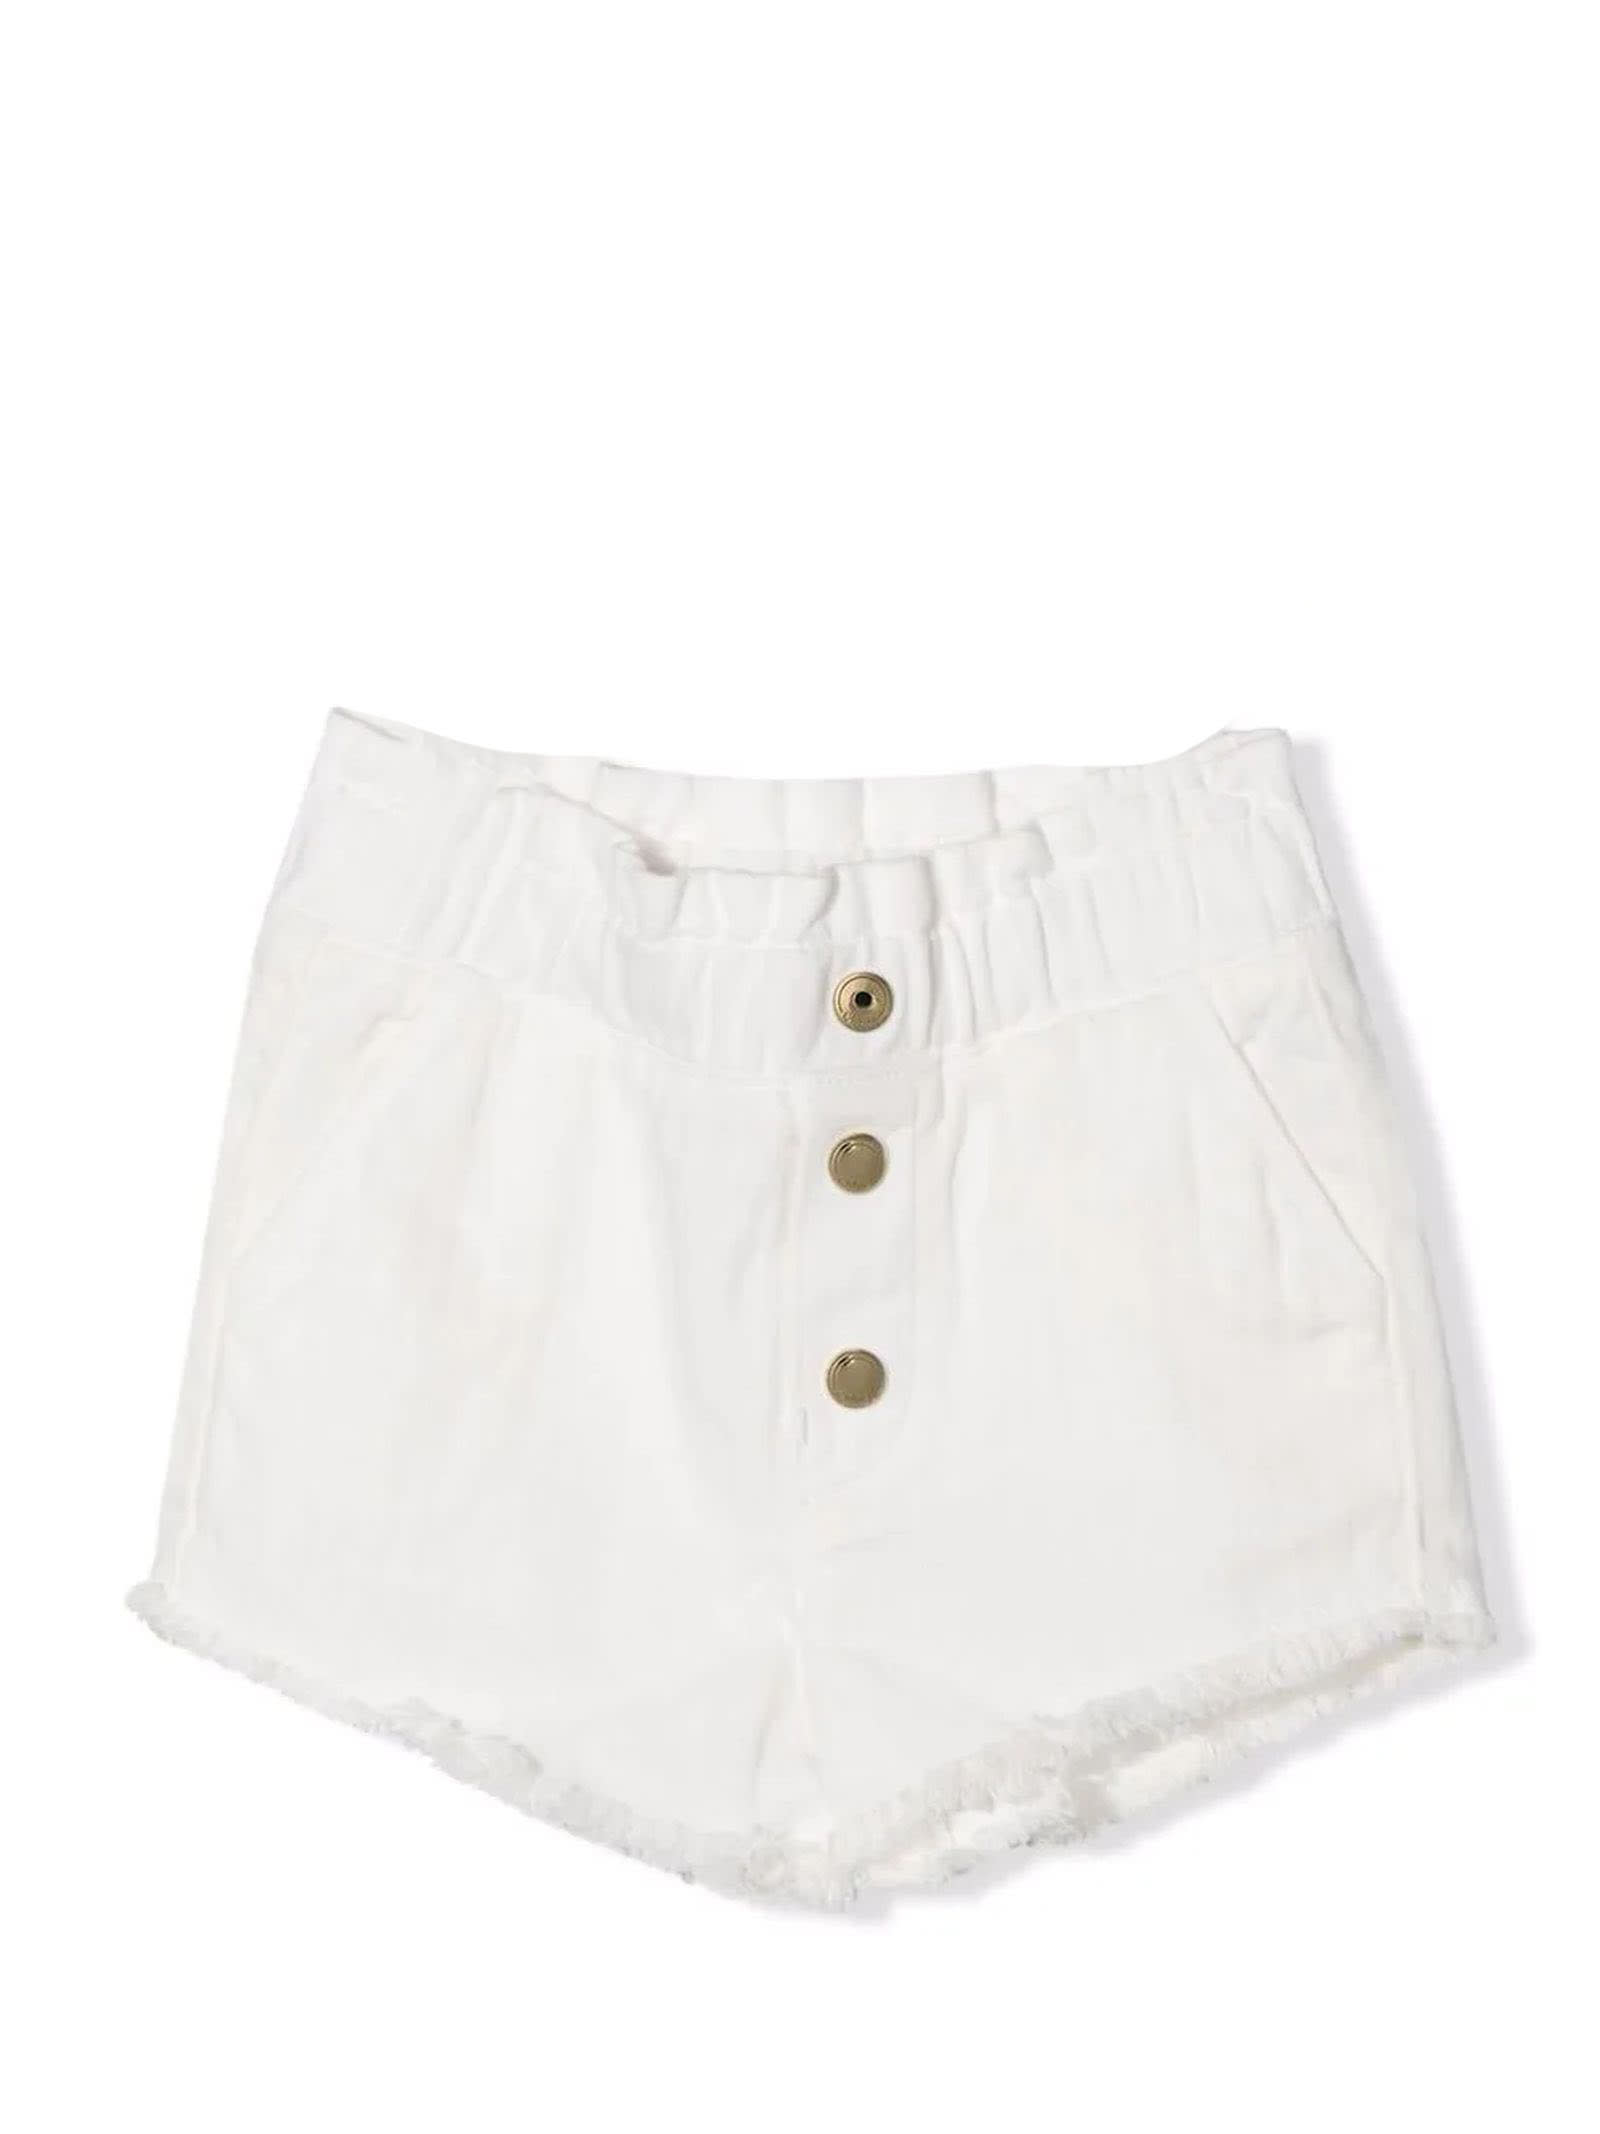 Chloé White Cotton Shorts